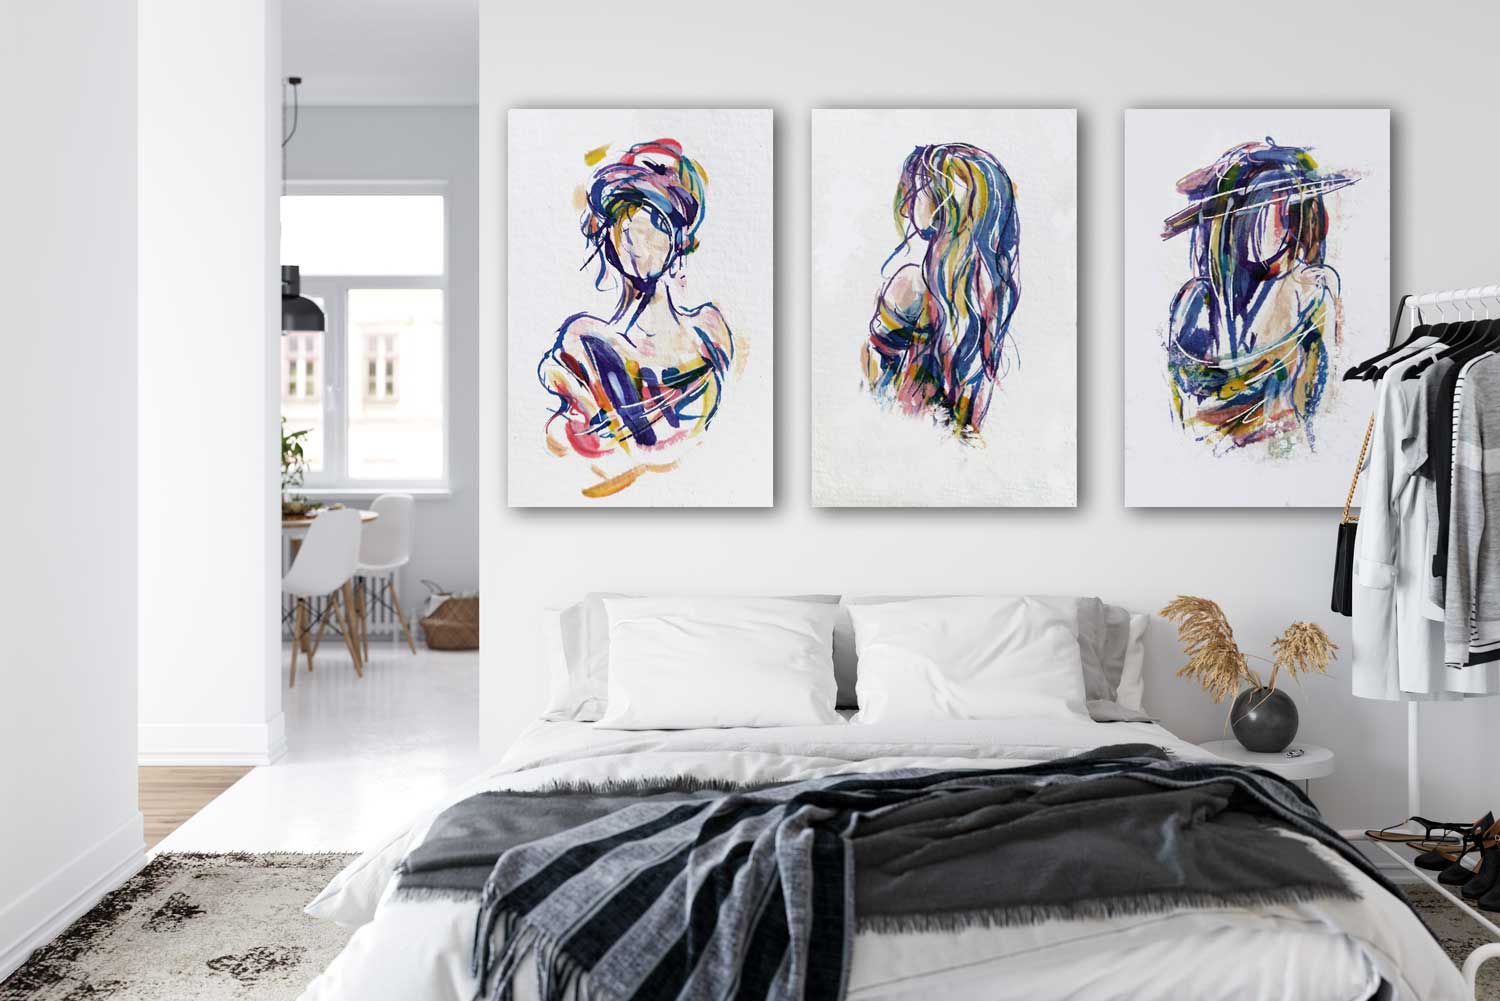 Drie moderne kleurige kunstwerken in dezelfde abstracte stijl